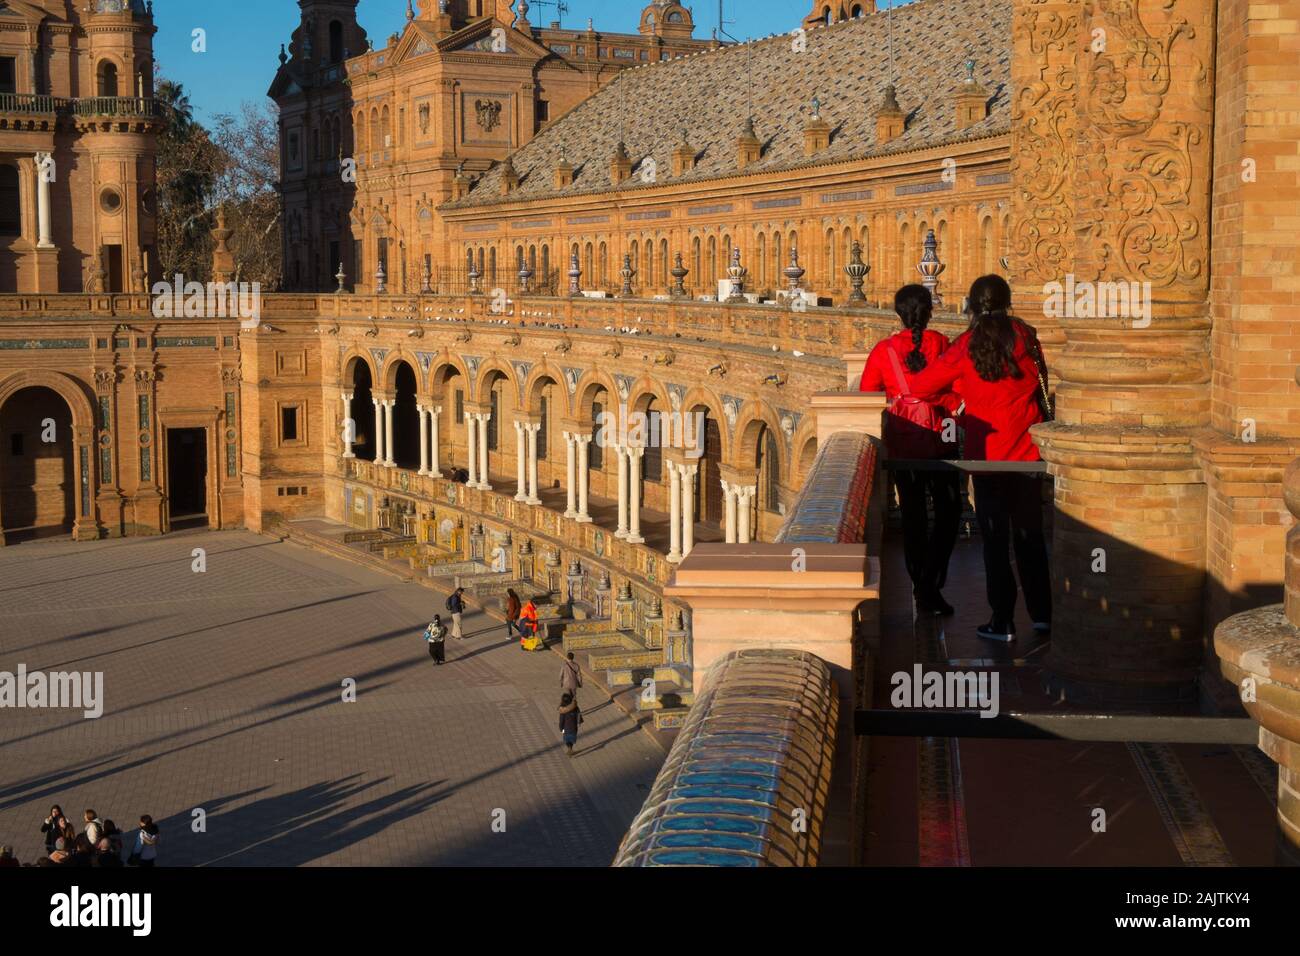 Deux femmes en chemises rouges se tiennent sur un balcon à la Plaza de España, Séville, Espagne Banque D'Images